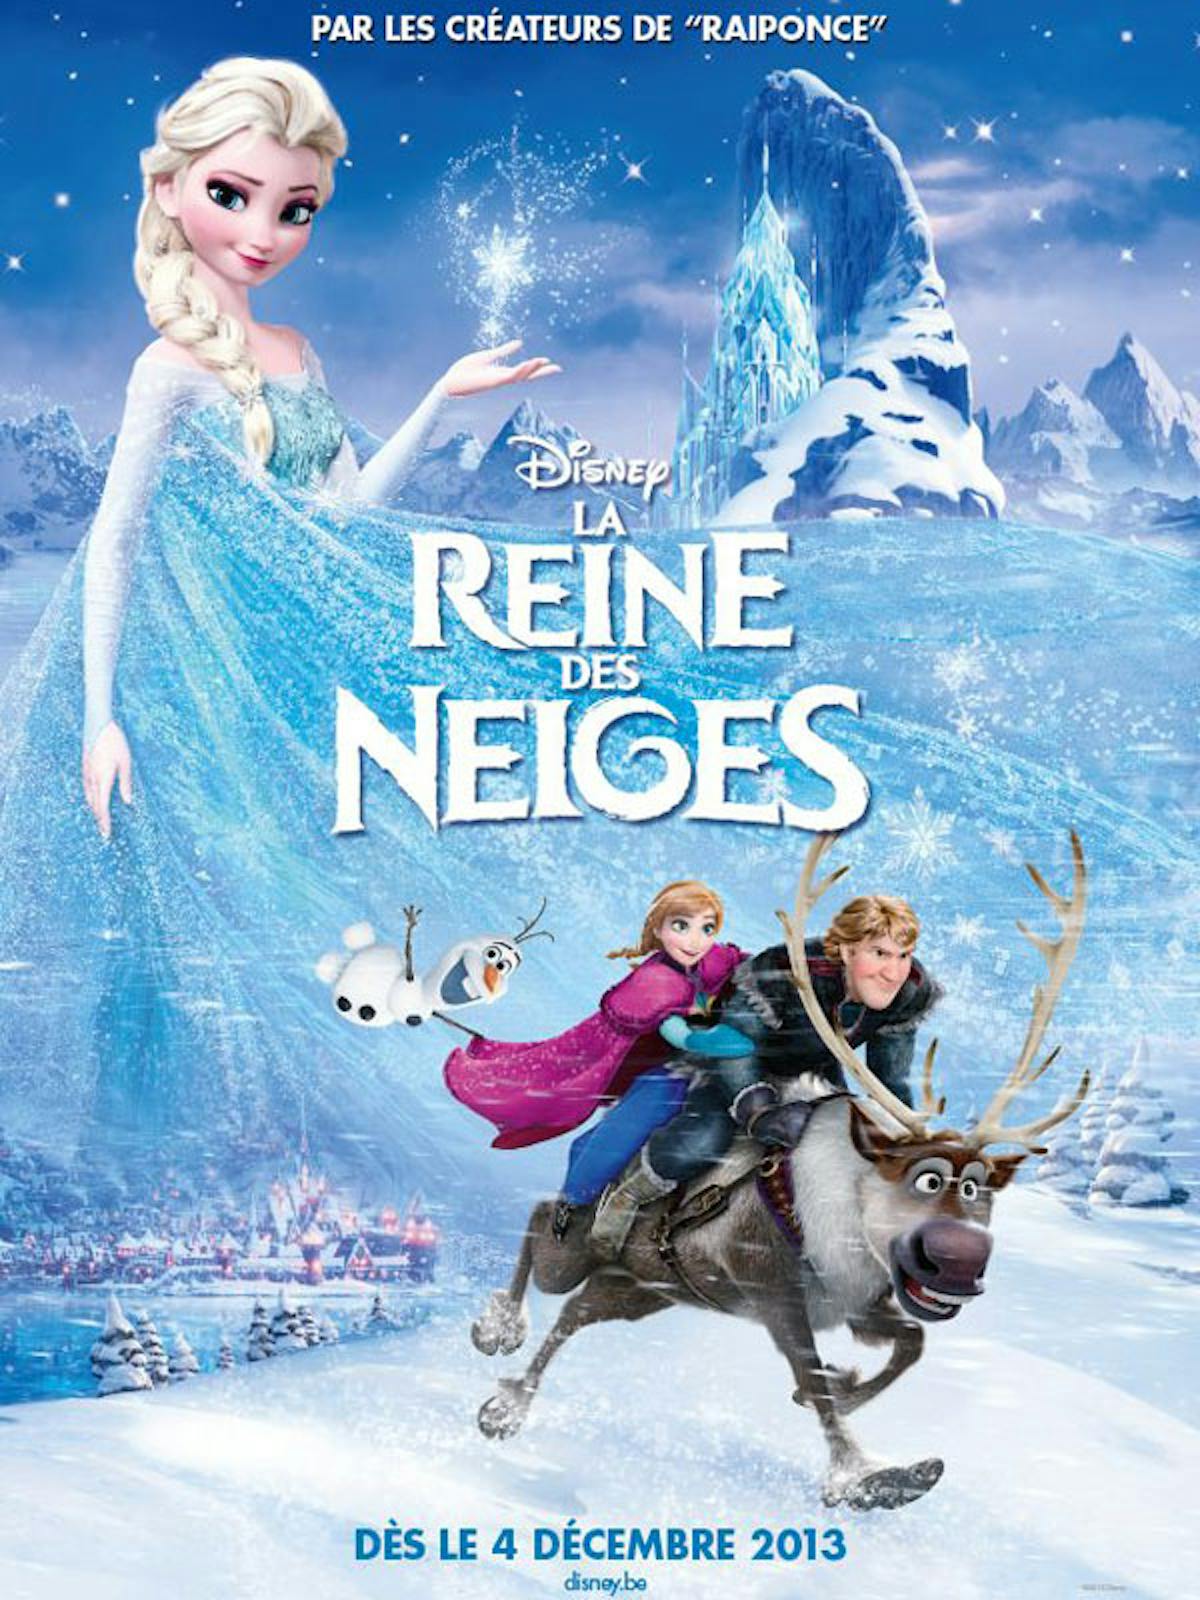 Les 4 ans de Maëlys sur le thème « Reine des neiges » – Spring in December